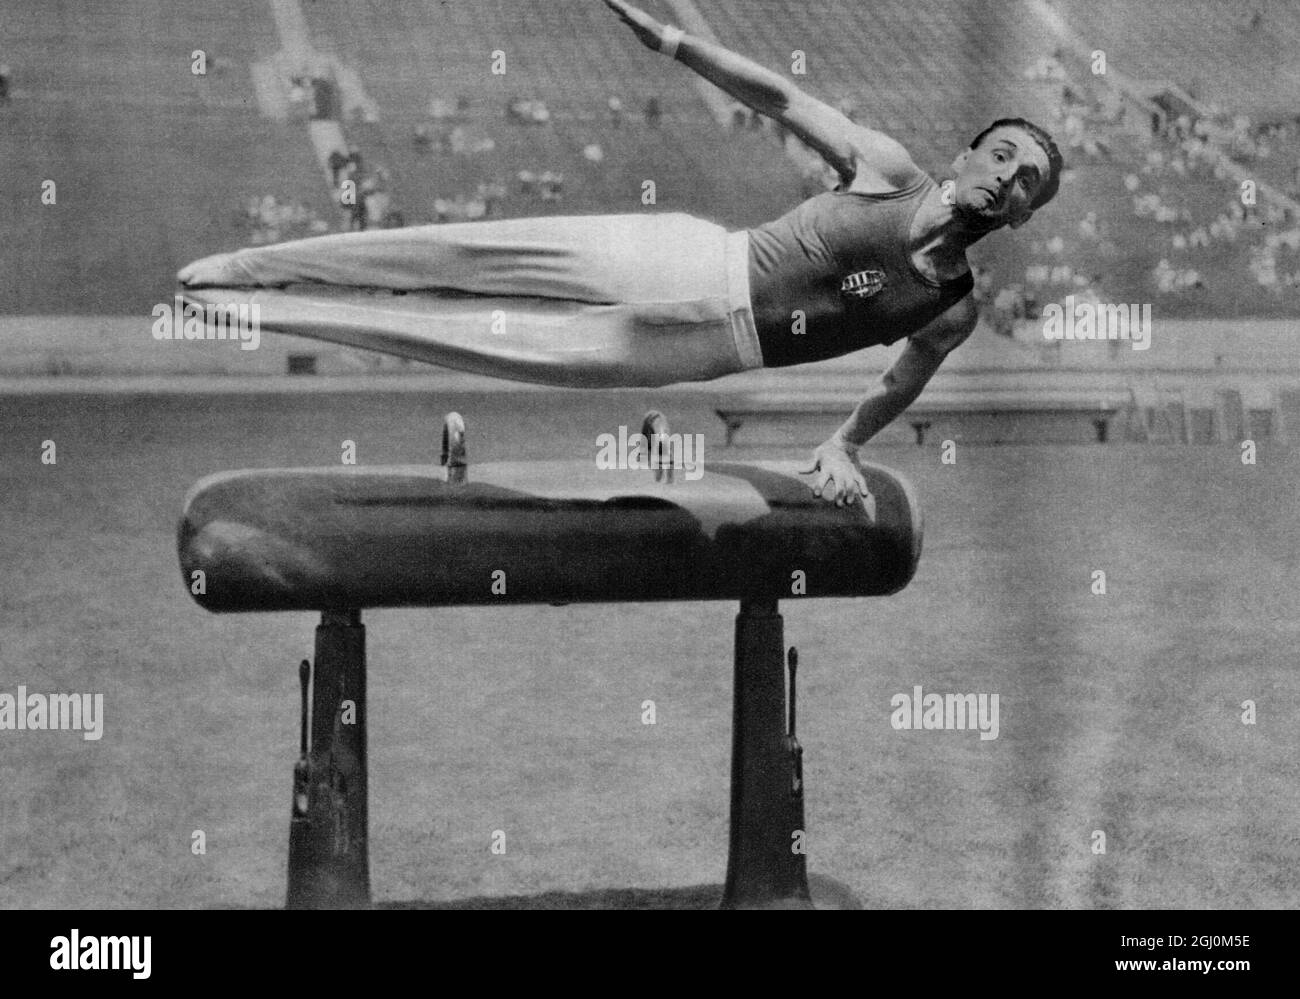 1932 Jeux Olympiques, Los Angeles, Etats-Unis, gymnastique, Stephen Pelle de Hongrie en action pour gagner la médaille d'or dans l'épreuve de Pommel Horse Banque D'Images